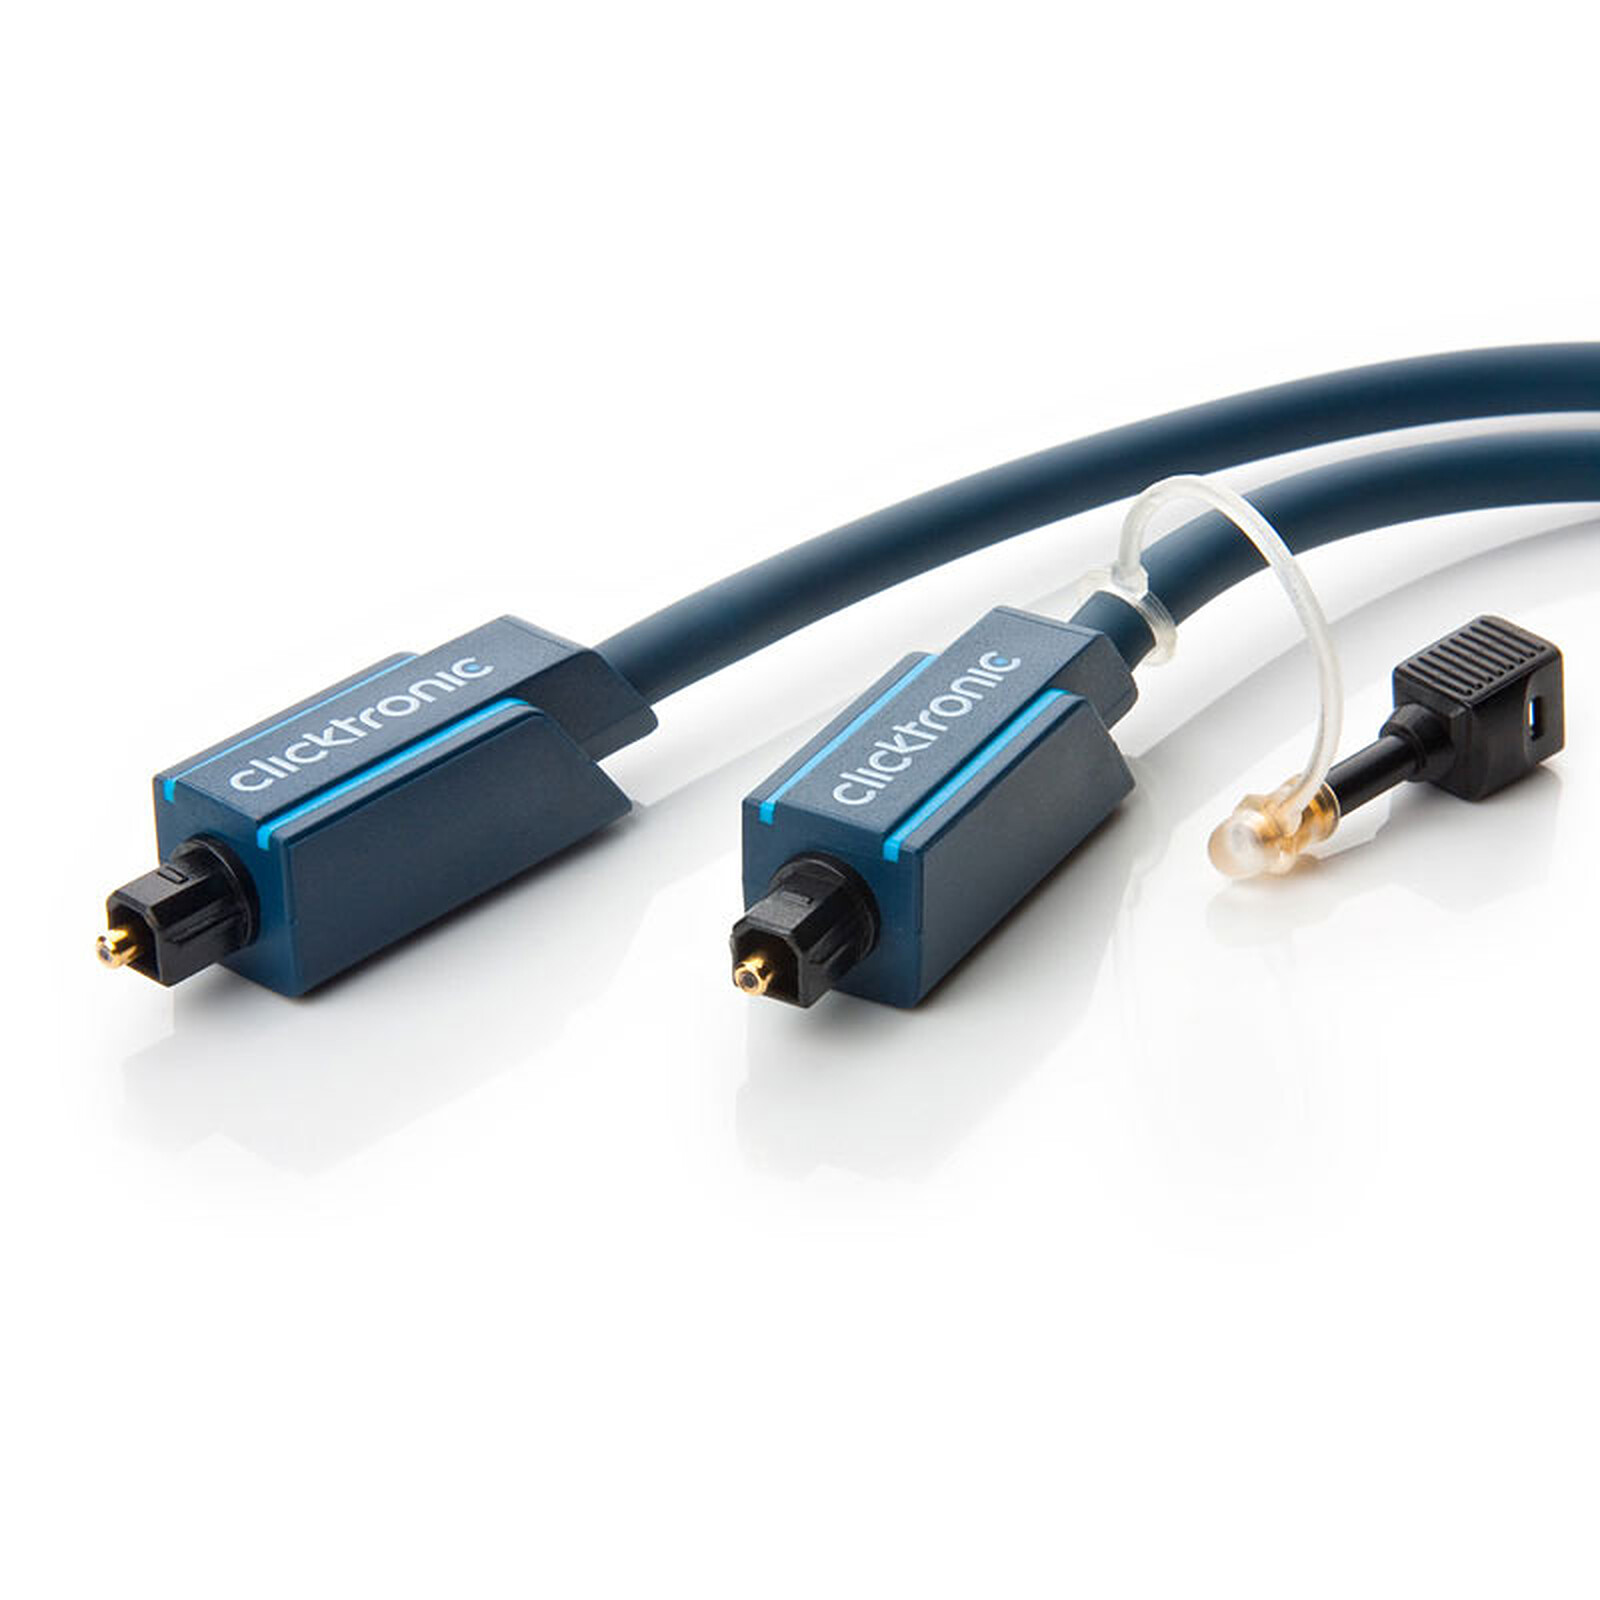 Clicktronic câble Toslink (15 mètres) - Câble audio numérique